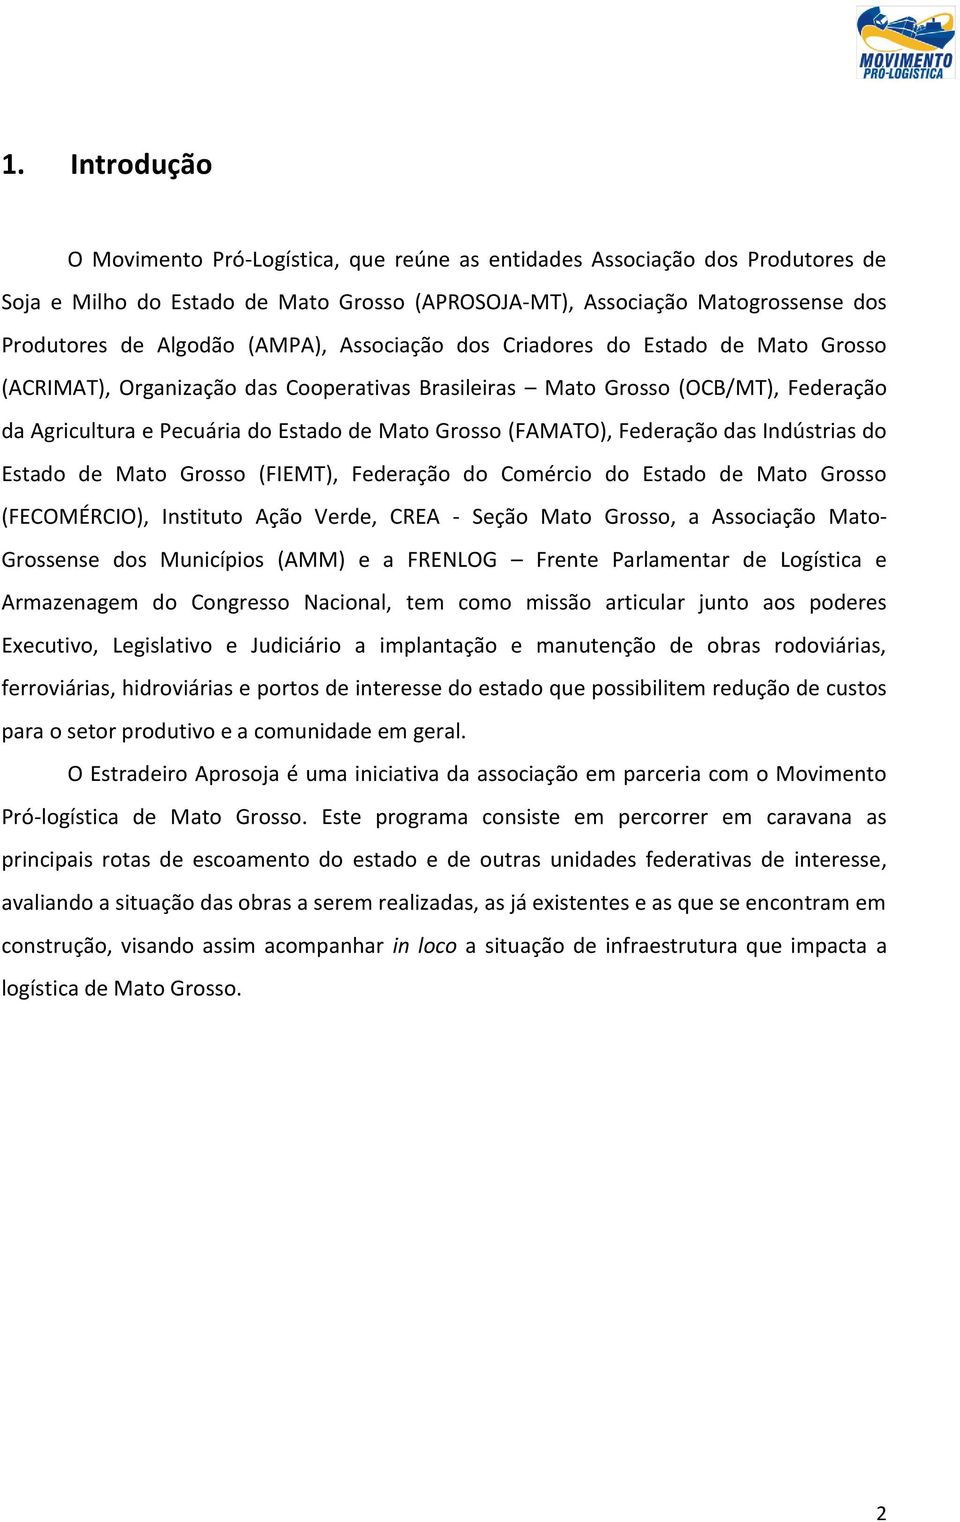 (FAMATO), Federação das Indústrias do Estado de Mato Grosso (FIEMT), Federação do Comércio do Estado de Mato Grosso (FECOMÉRCIO), Instituto Ação Verde, CREA - Seção Mato Grosso, a Associação Mato-